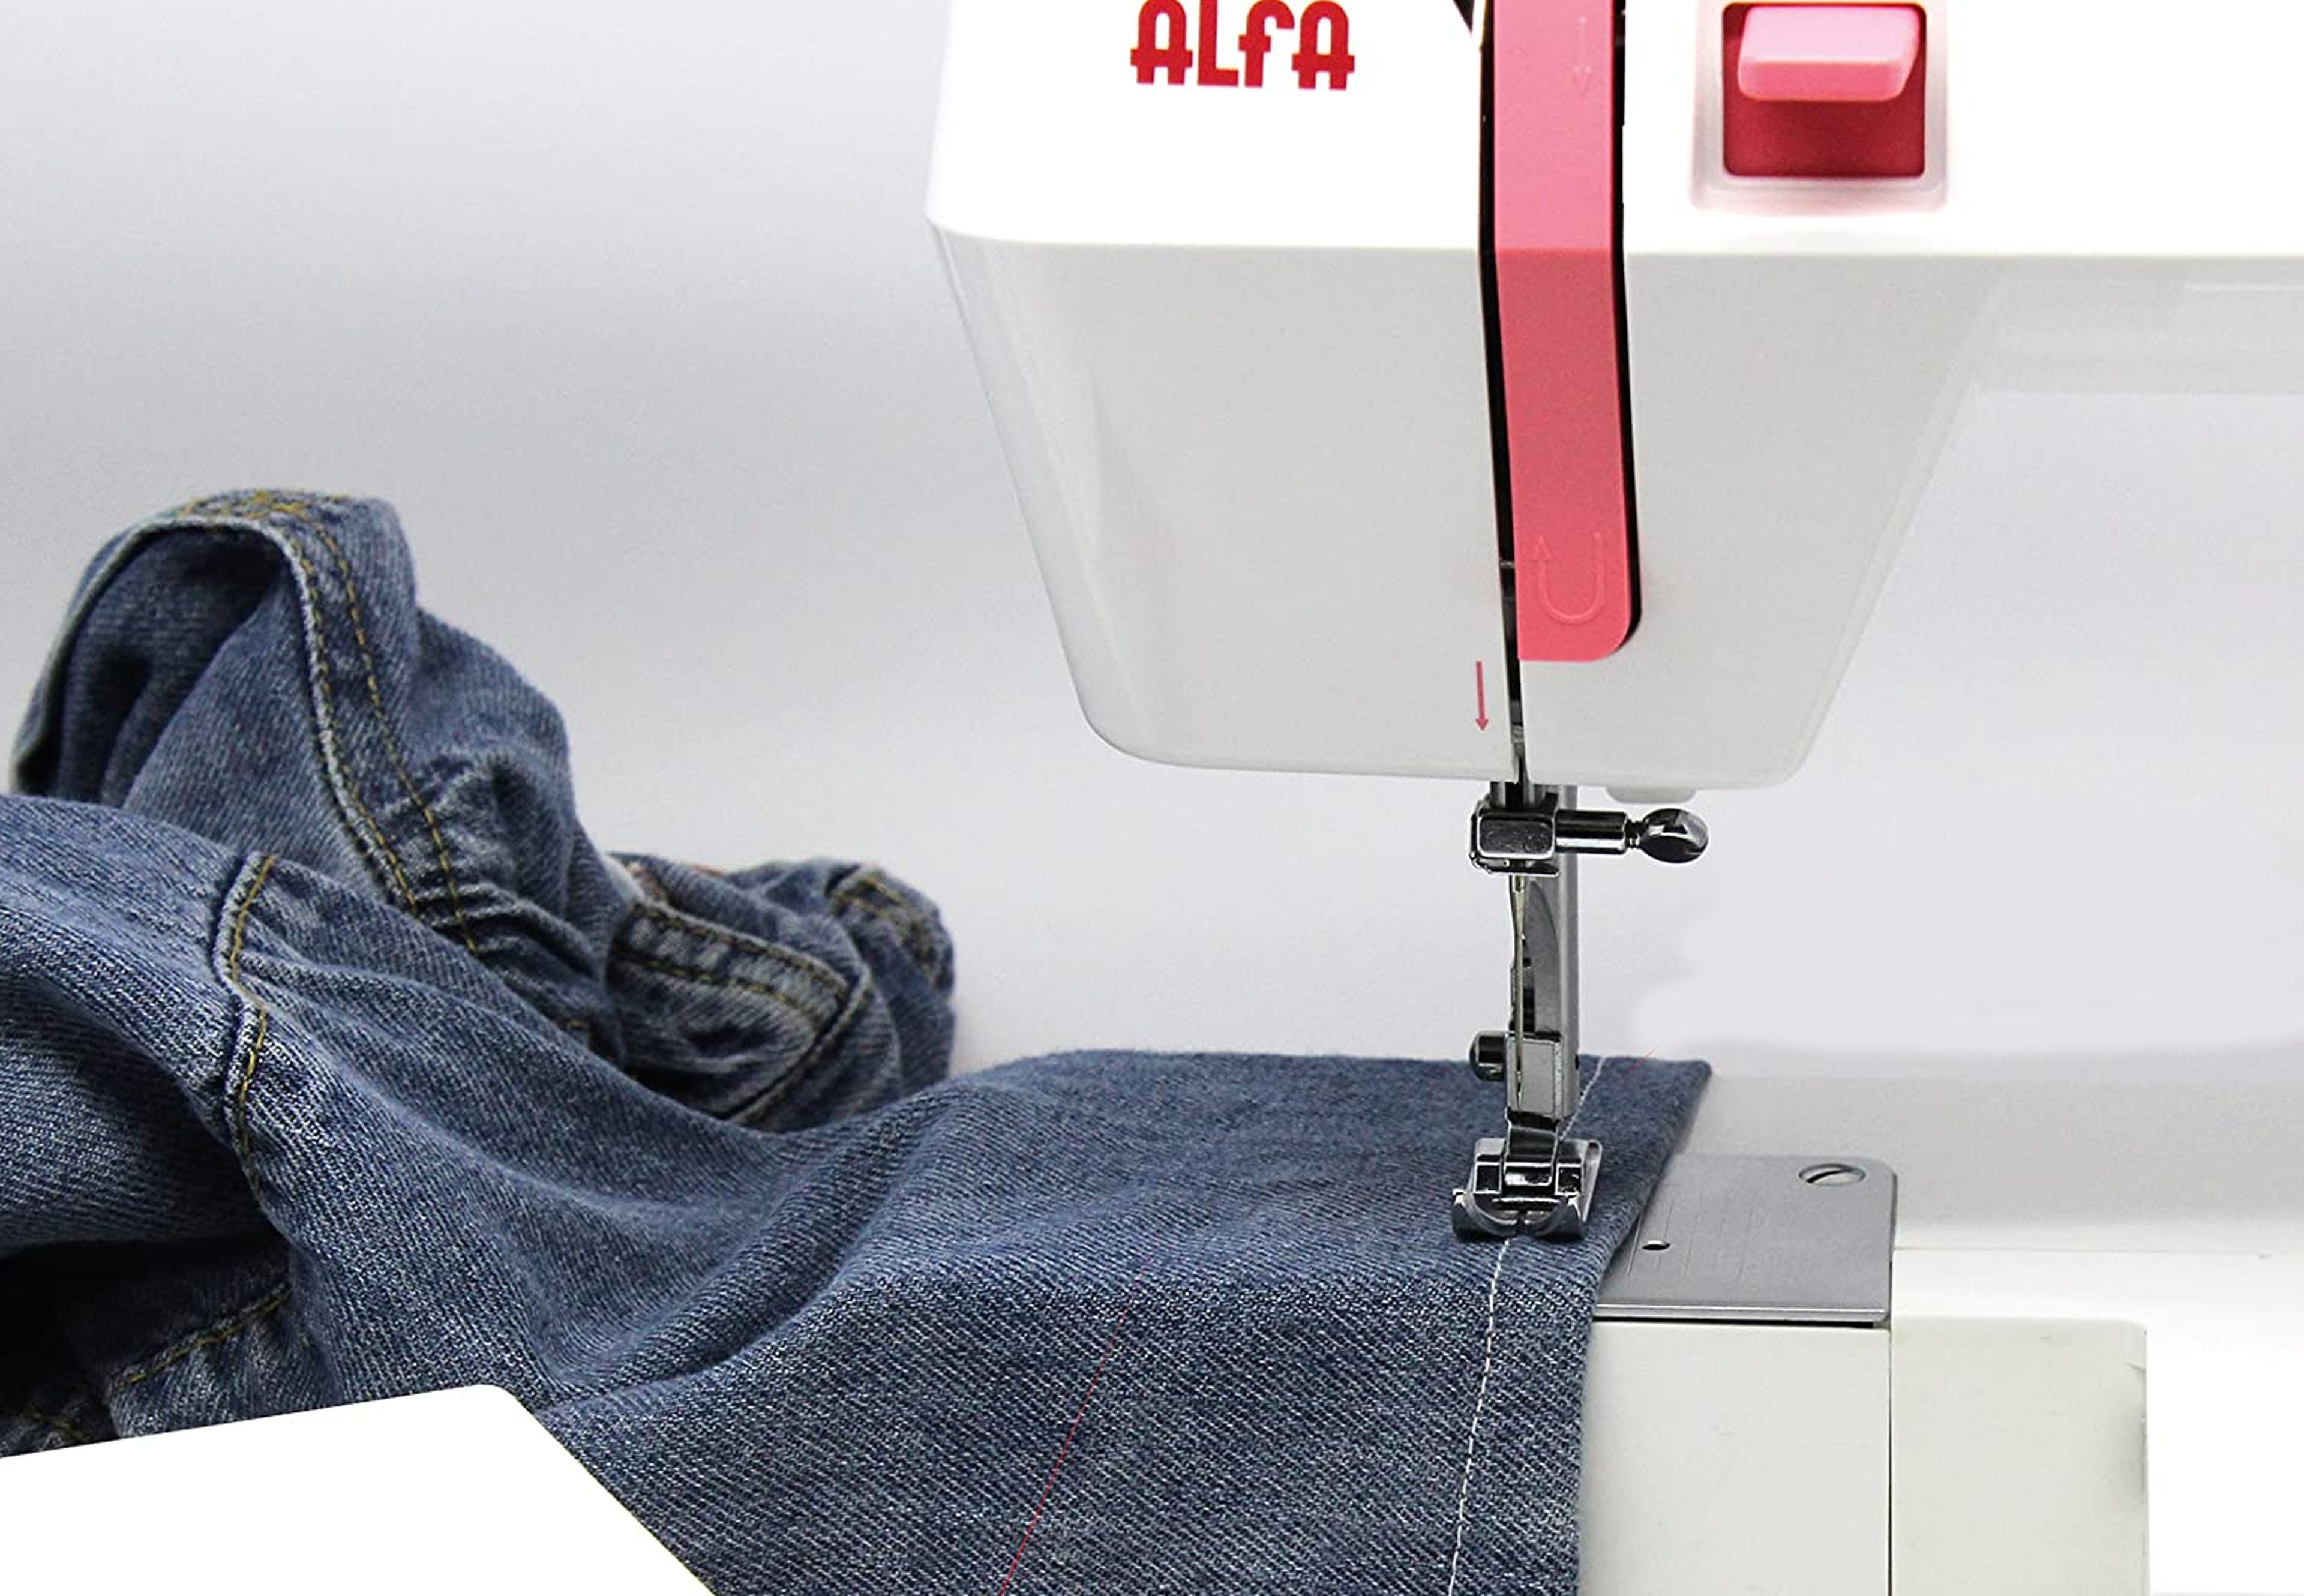 Mejores máquinas de coser Alfa